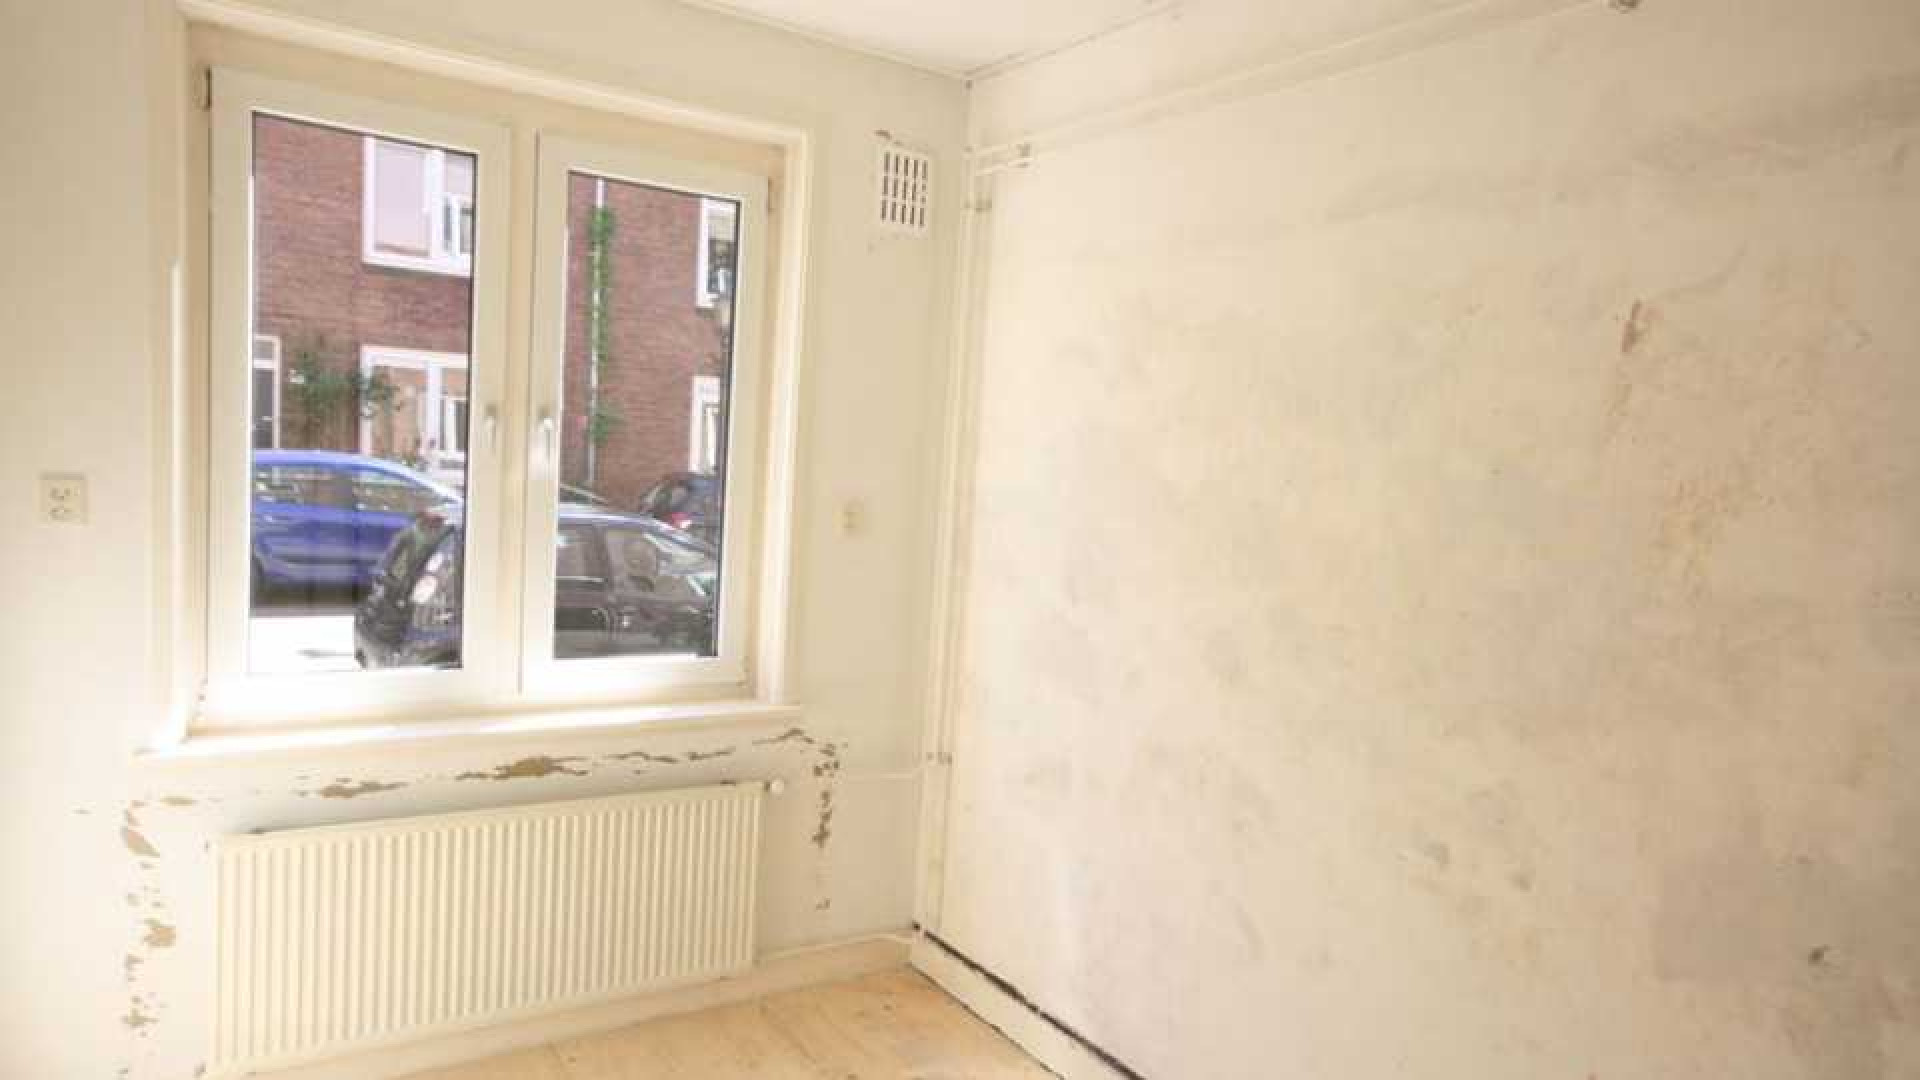 Kluun betaalt dik boven de vraagprijs voor woning in de Amsterdamse De Pijp. Zie foto's 4